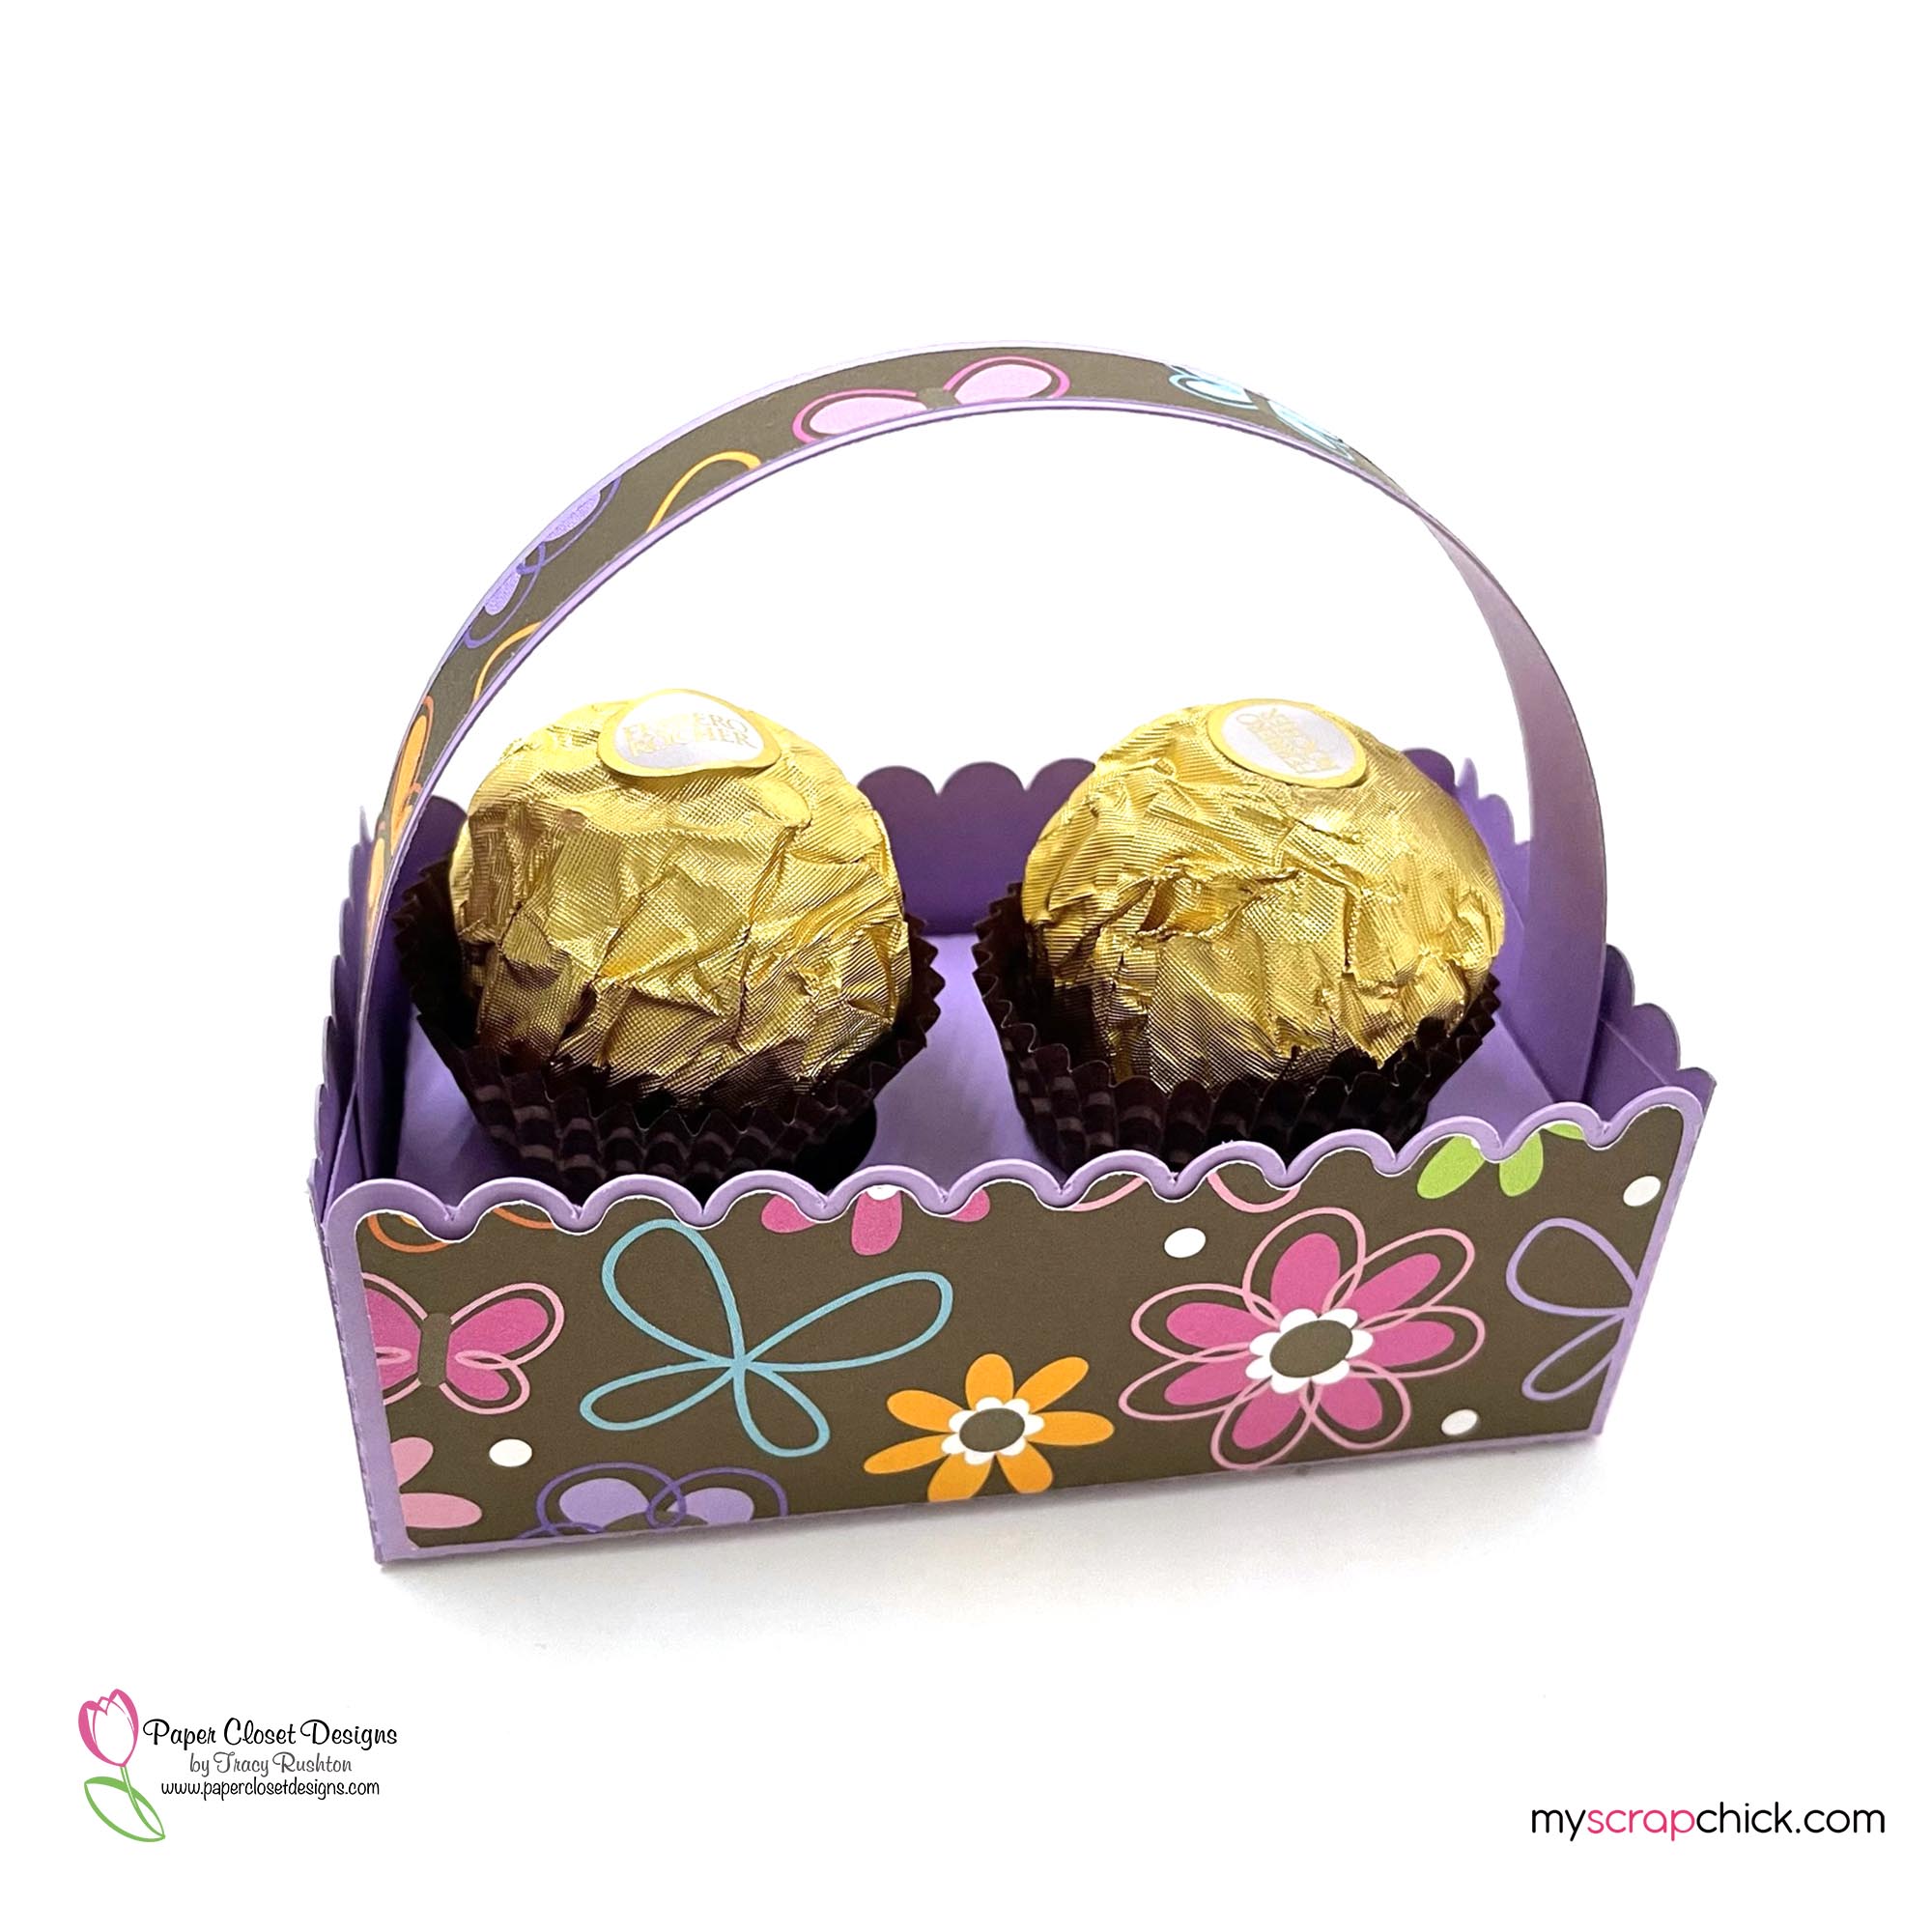 Scalloped Easter Egg Basket 2 Pack Filled